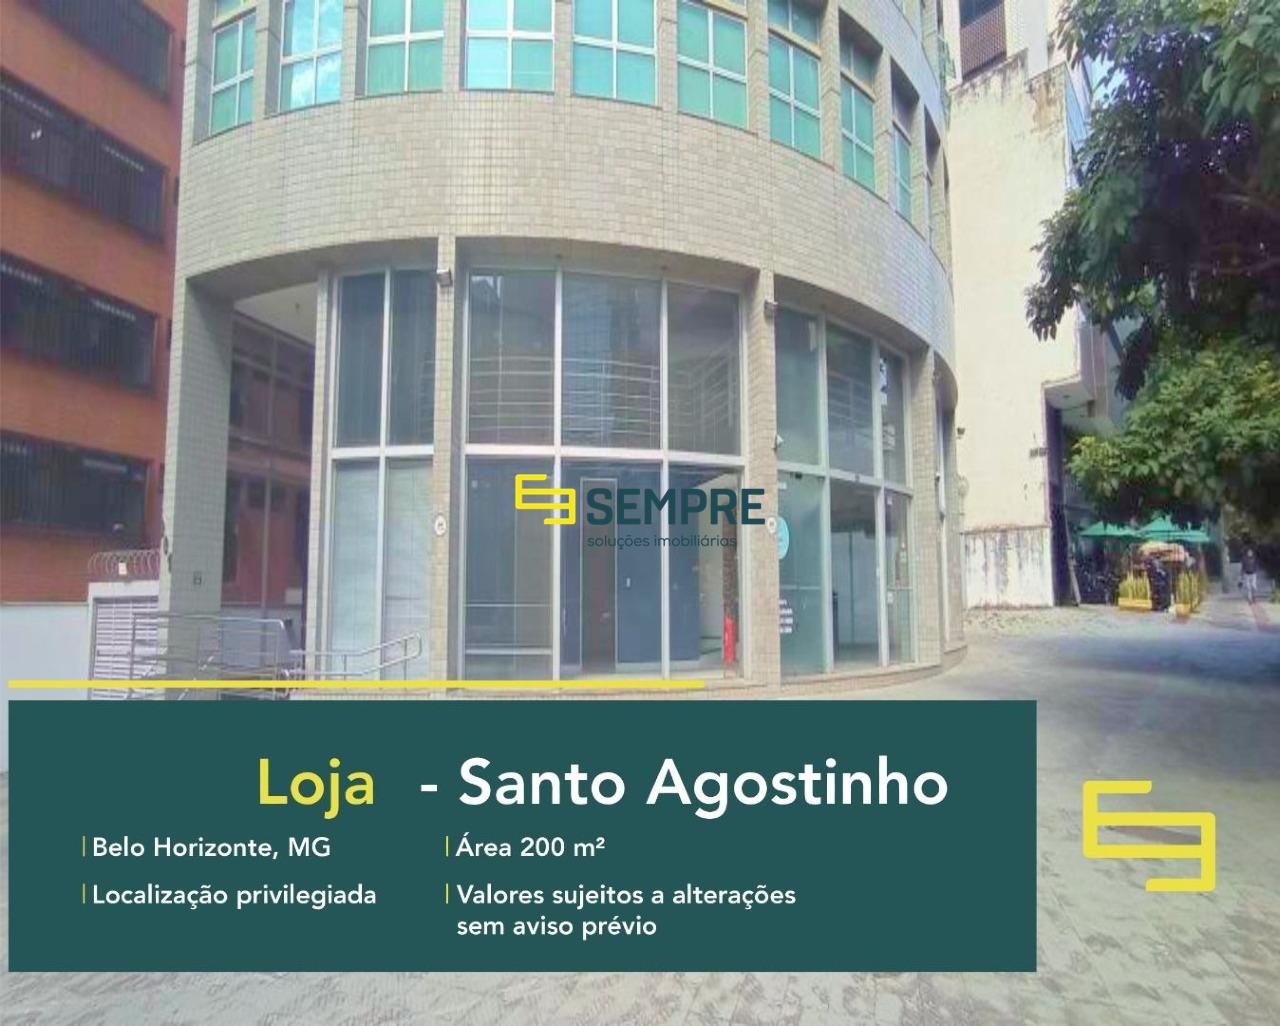 Loja para alugar no Santo Agostinho em Belo Horizonte. O estabelecimento comercial conta, sobretudo, com área de 200 m².